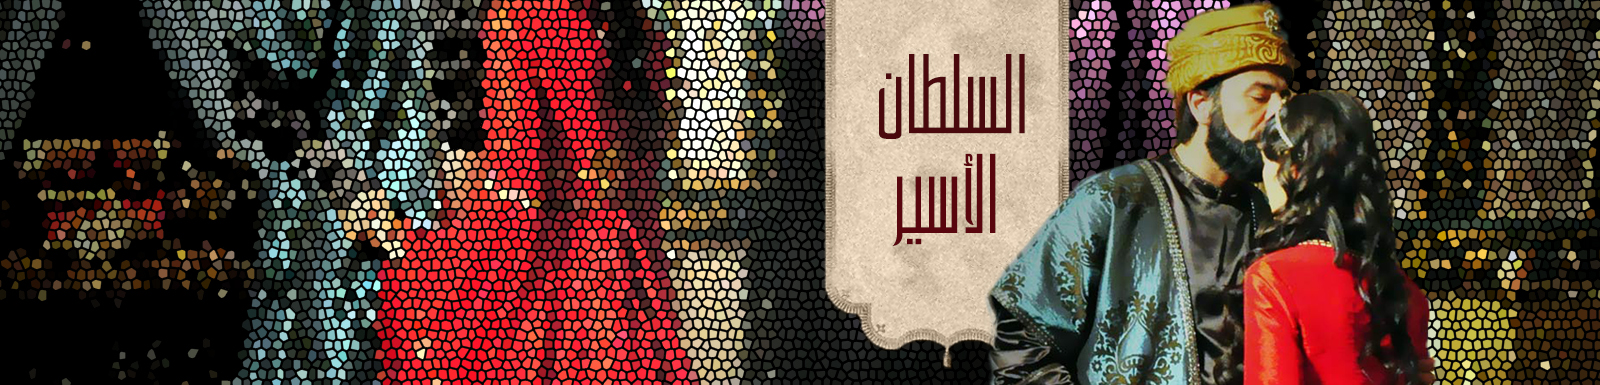 قصة وأحداث مسلسل السلطان الأسير 2015 على قناة mbc